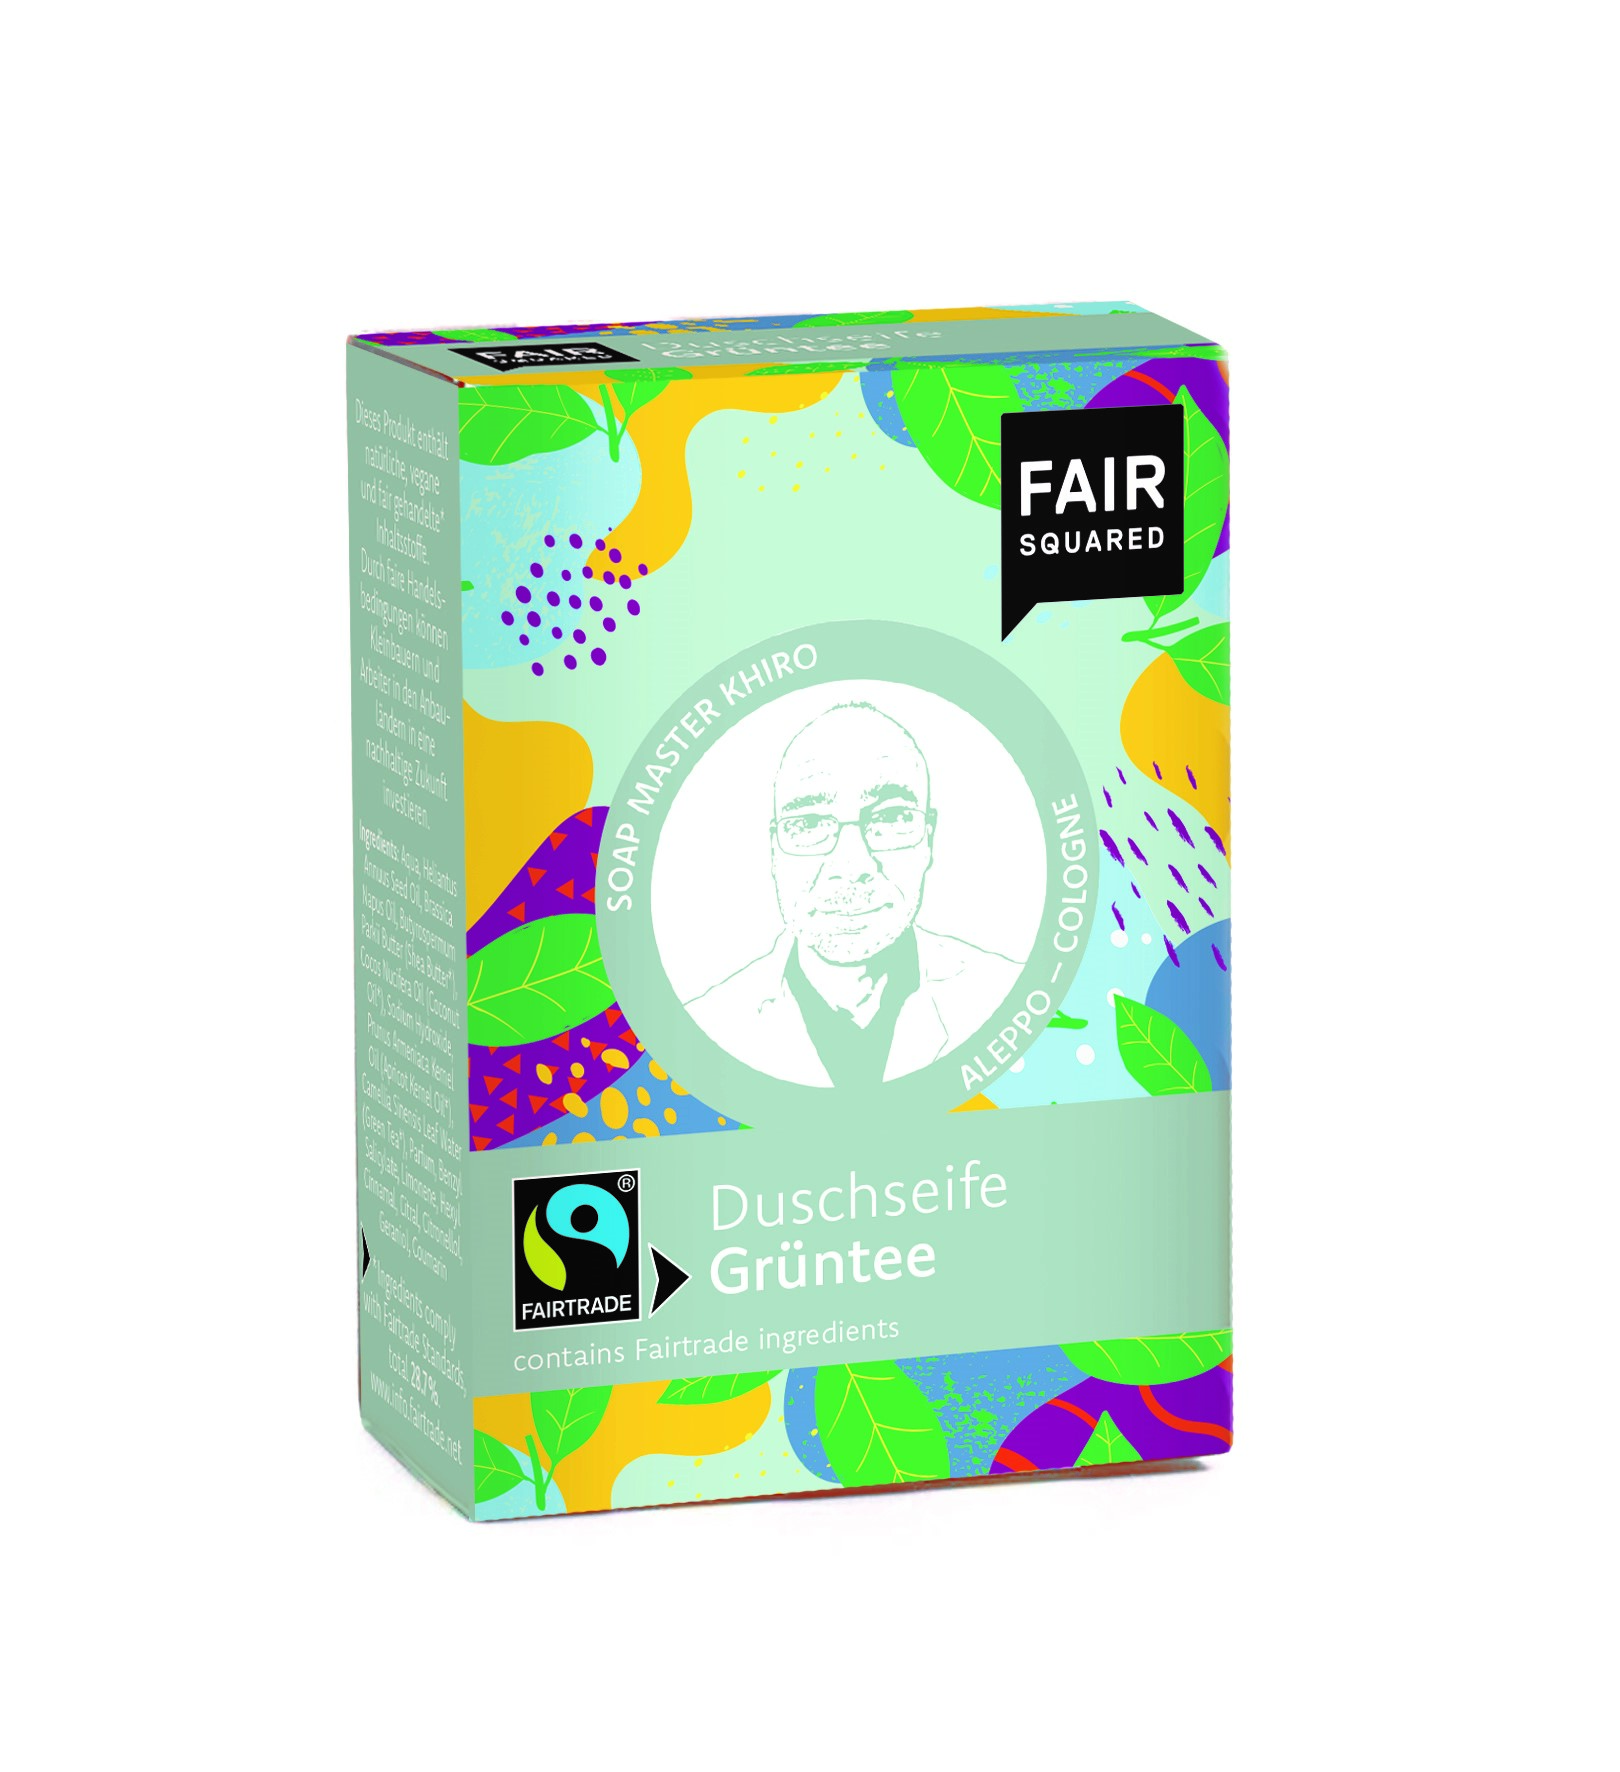 FAIR SQUARED Fairtrade Jubiläum Duschseife Grüntee 80 gr.